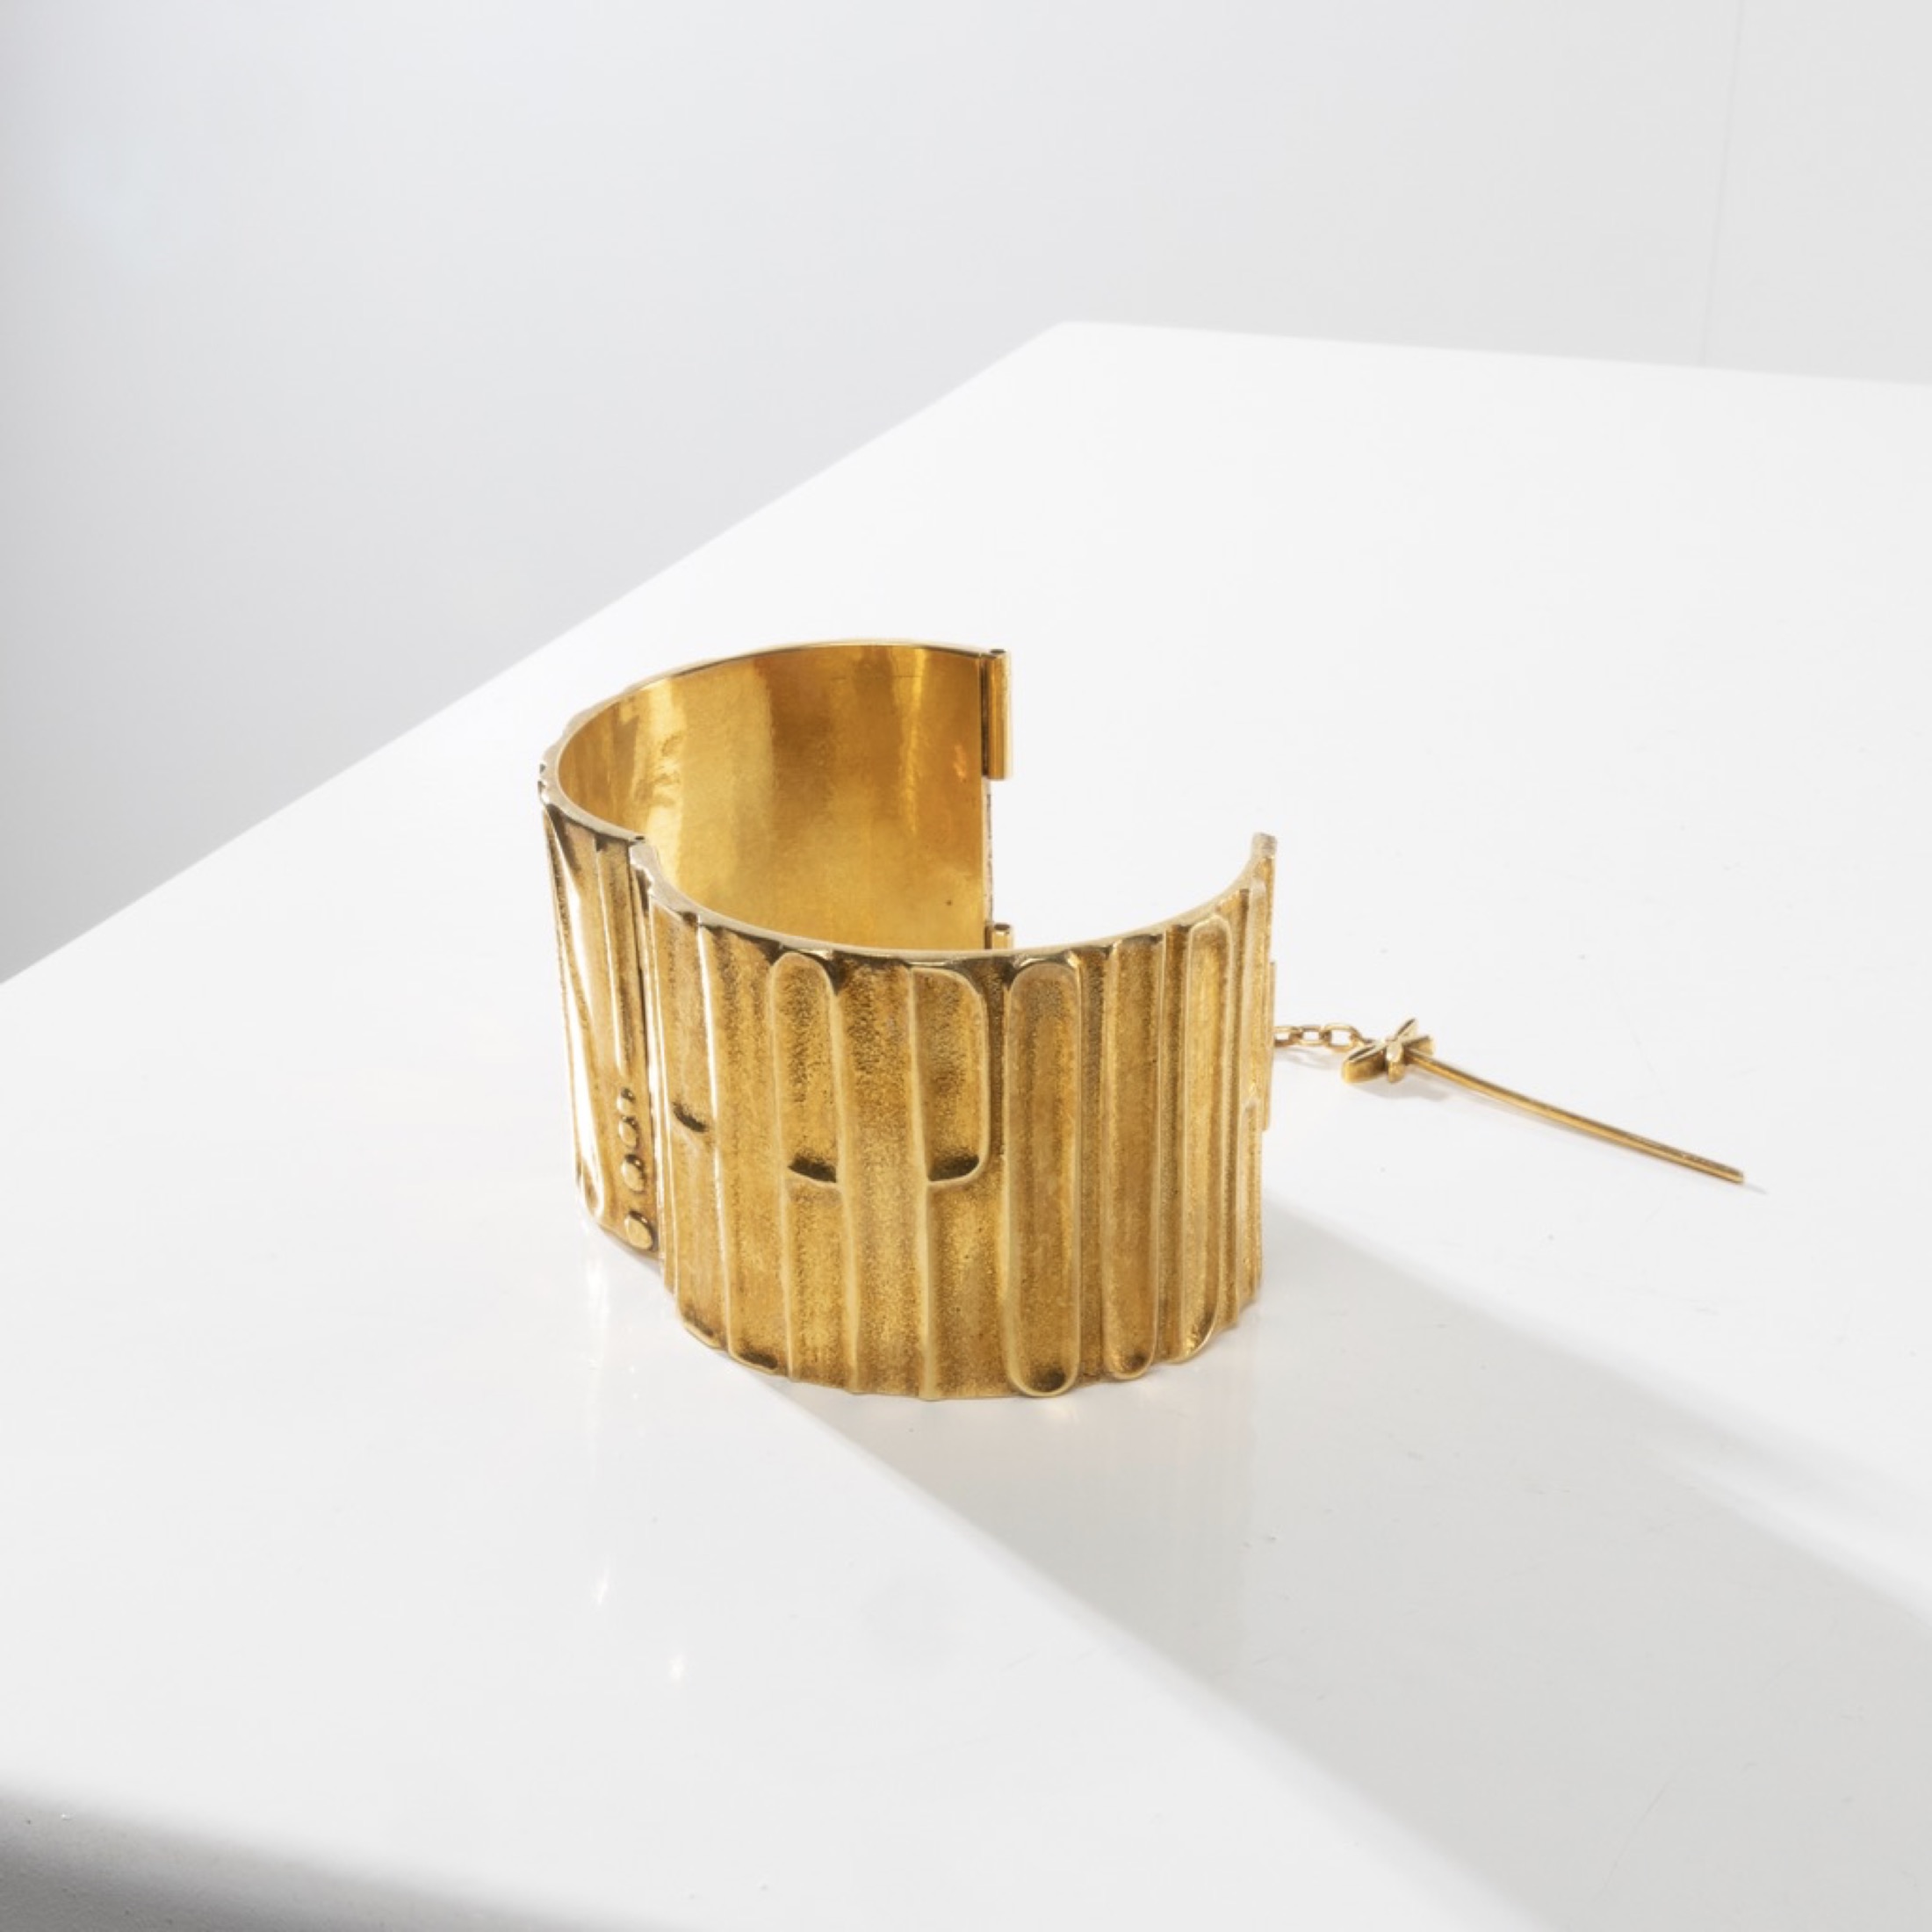 De la poudre et des bals by Line Vautrin - Gilt bronze armband - 05